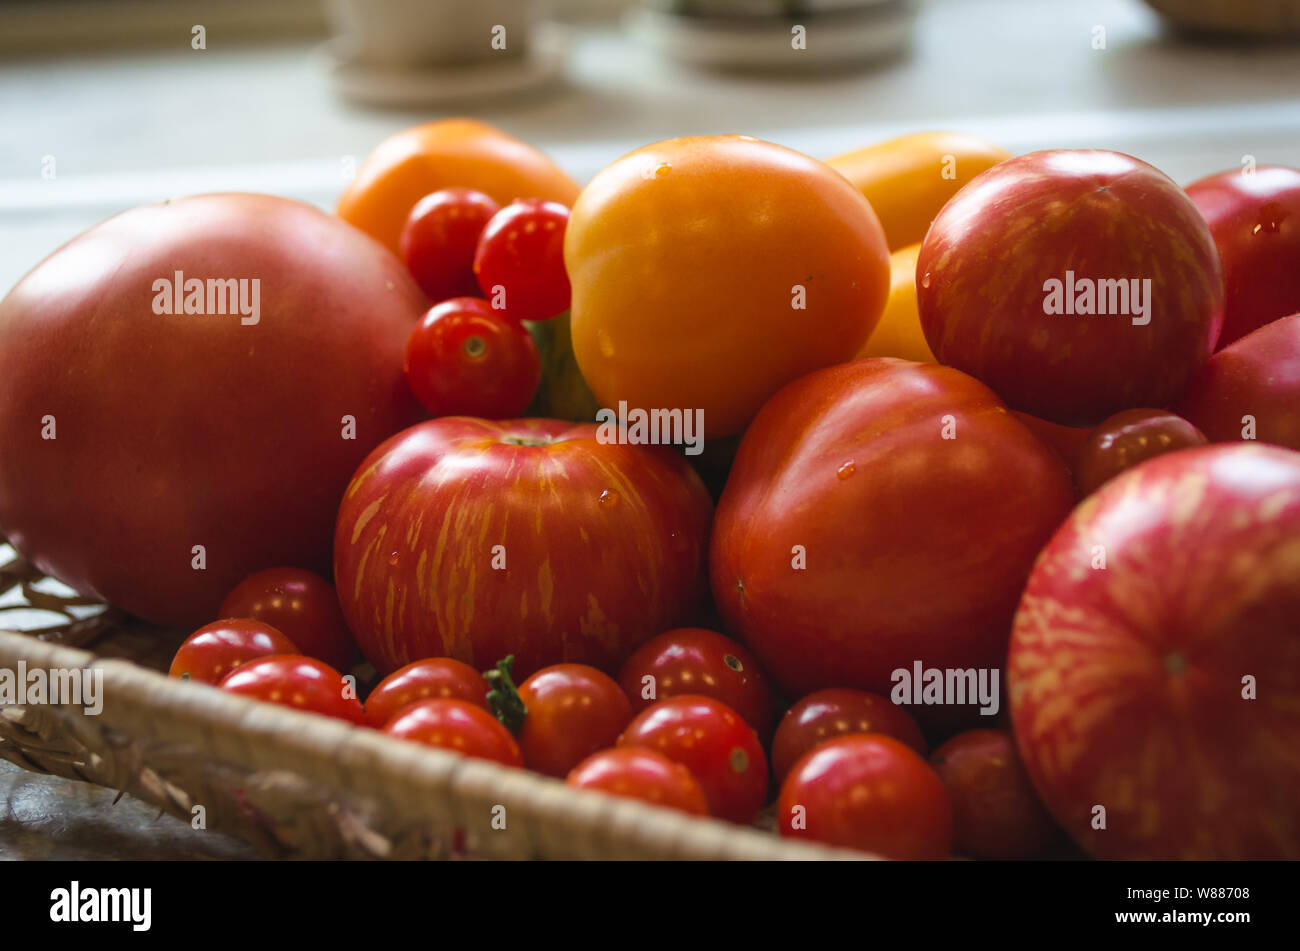 Close up appena raccolto dal giardino di pomodori. Diversi tipi di pomodori su una piastra - Pomodori ciliegia, rosso, arancione pomodori. Foto Stock